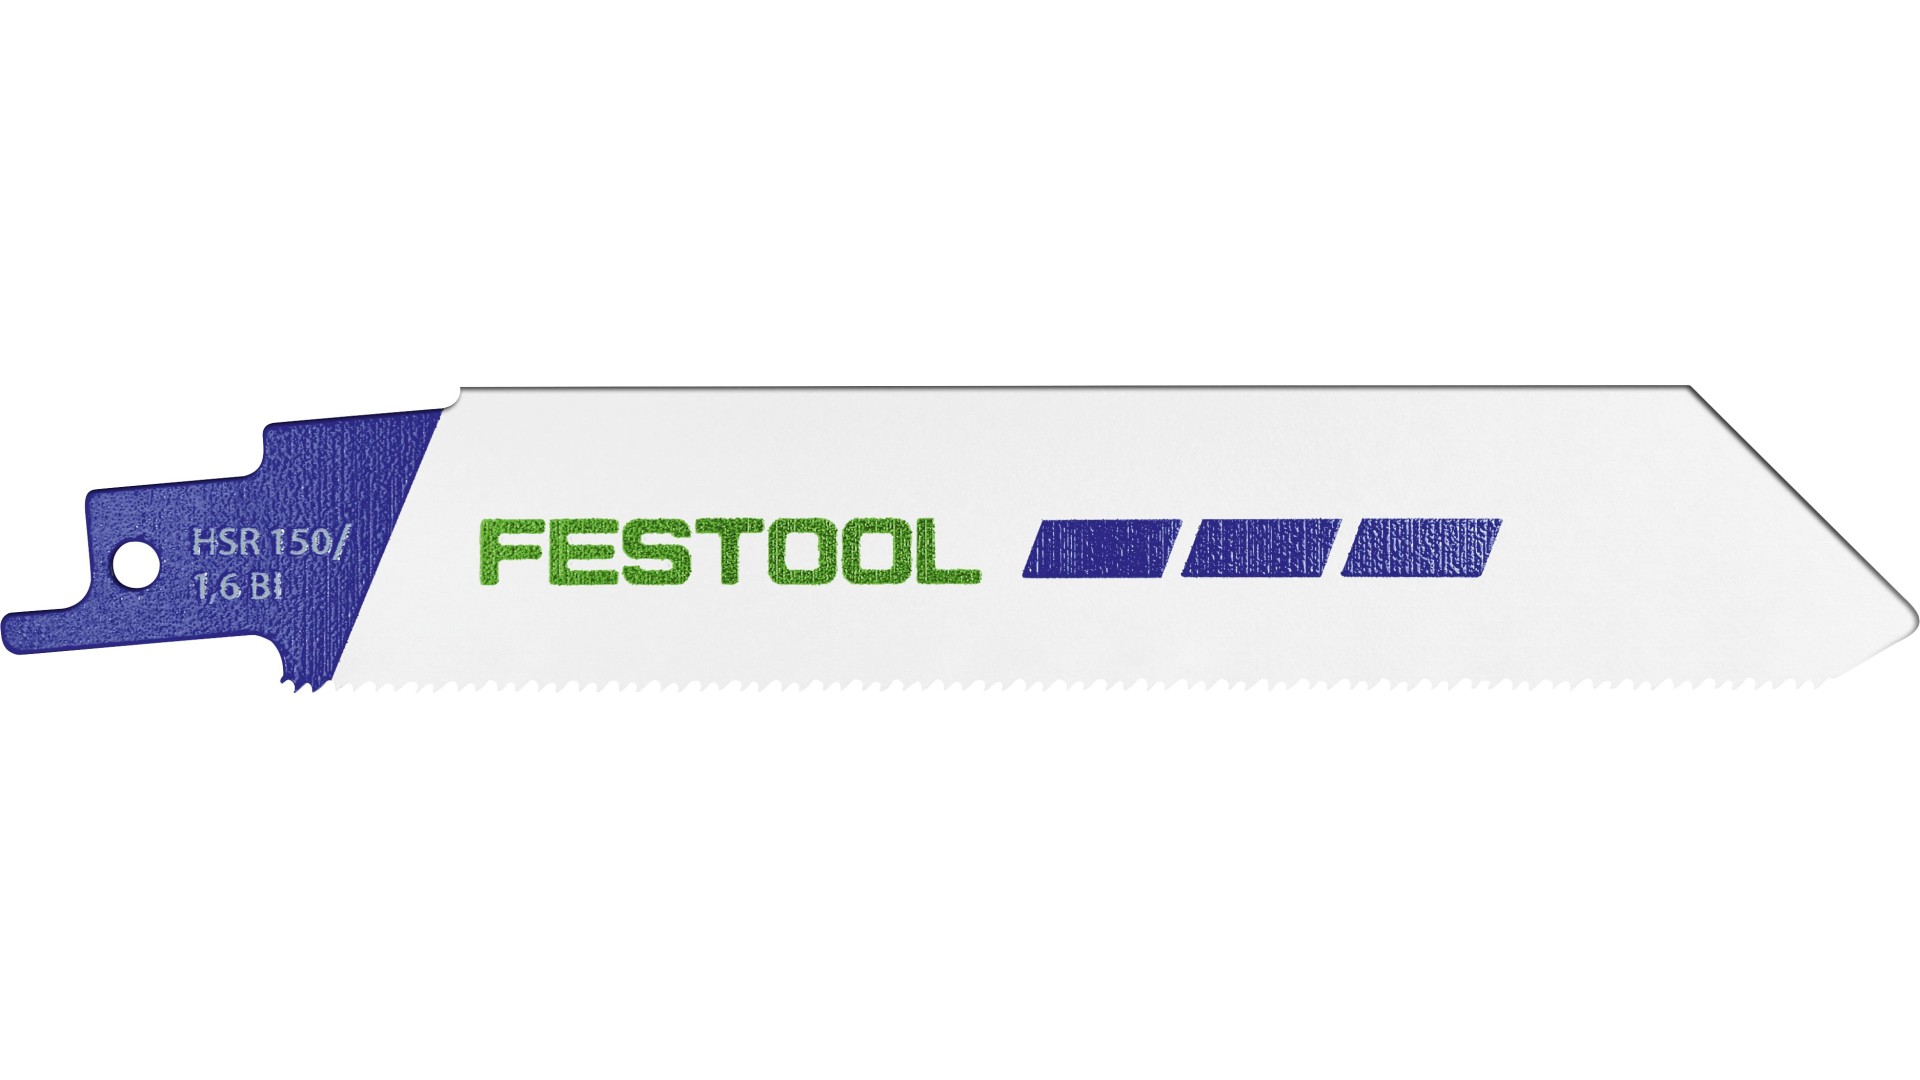 Пильное полотно Festool HSR 150/1,6 BI/5 METAL STEEL/STAINLESS STEEL полотно пильное по дереву биметаллическое 2667х10х0 6 мм 4 tpi bim для ленточнопильных станков bahco 3851 10 0 6 h 4 2667